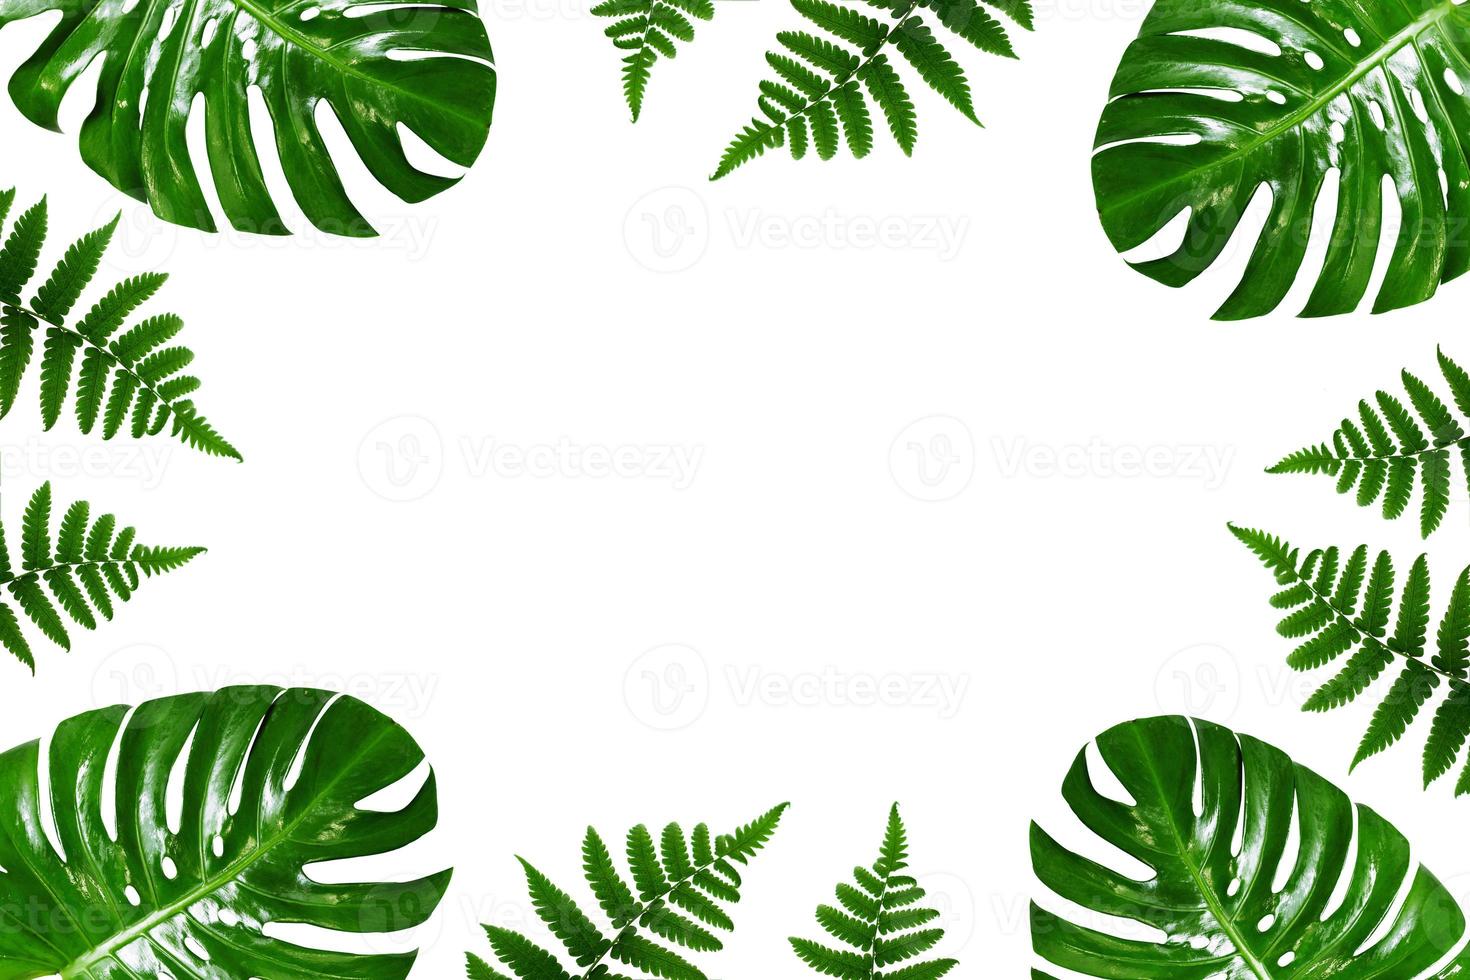 Marco de hojas de palmeras tropicales sobre un fondo blanco. foto